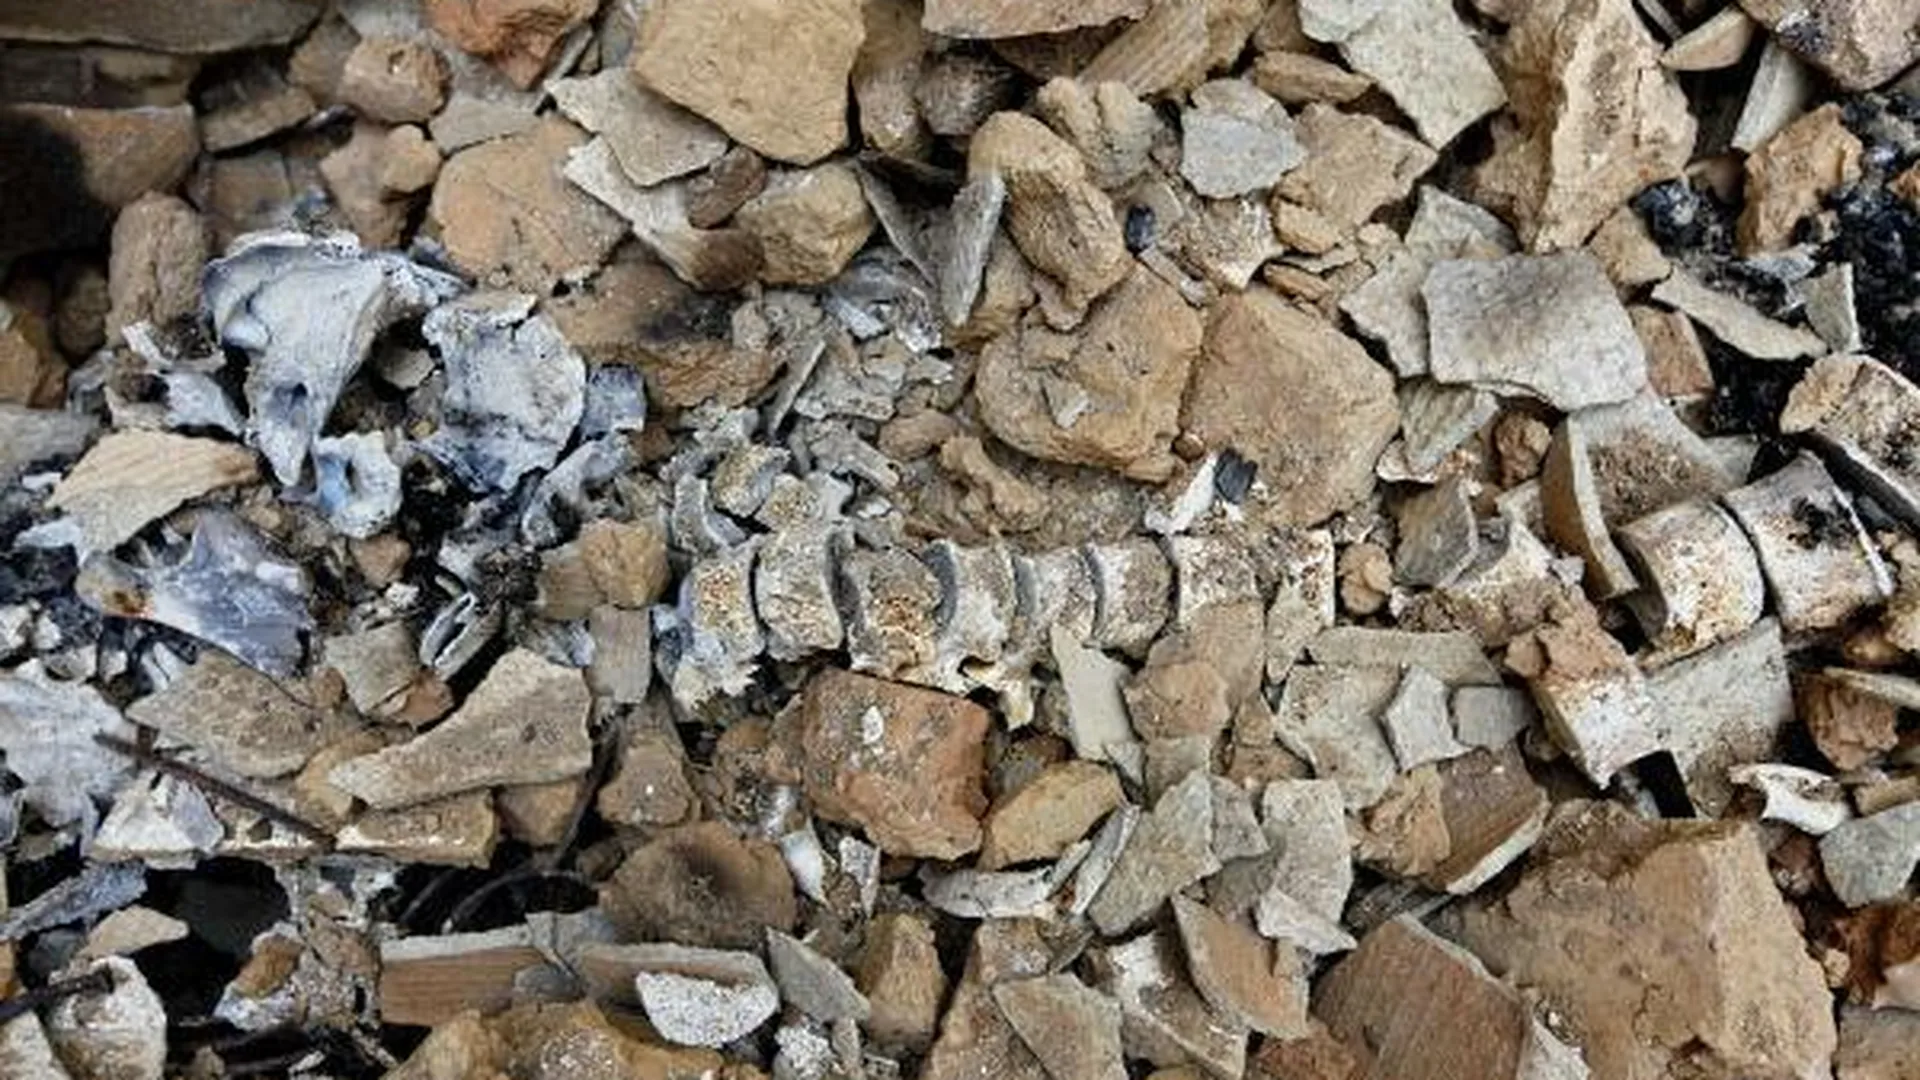 Человеческий скелет нашел дачник в строительном мусоре в Электроуглях